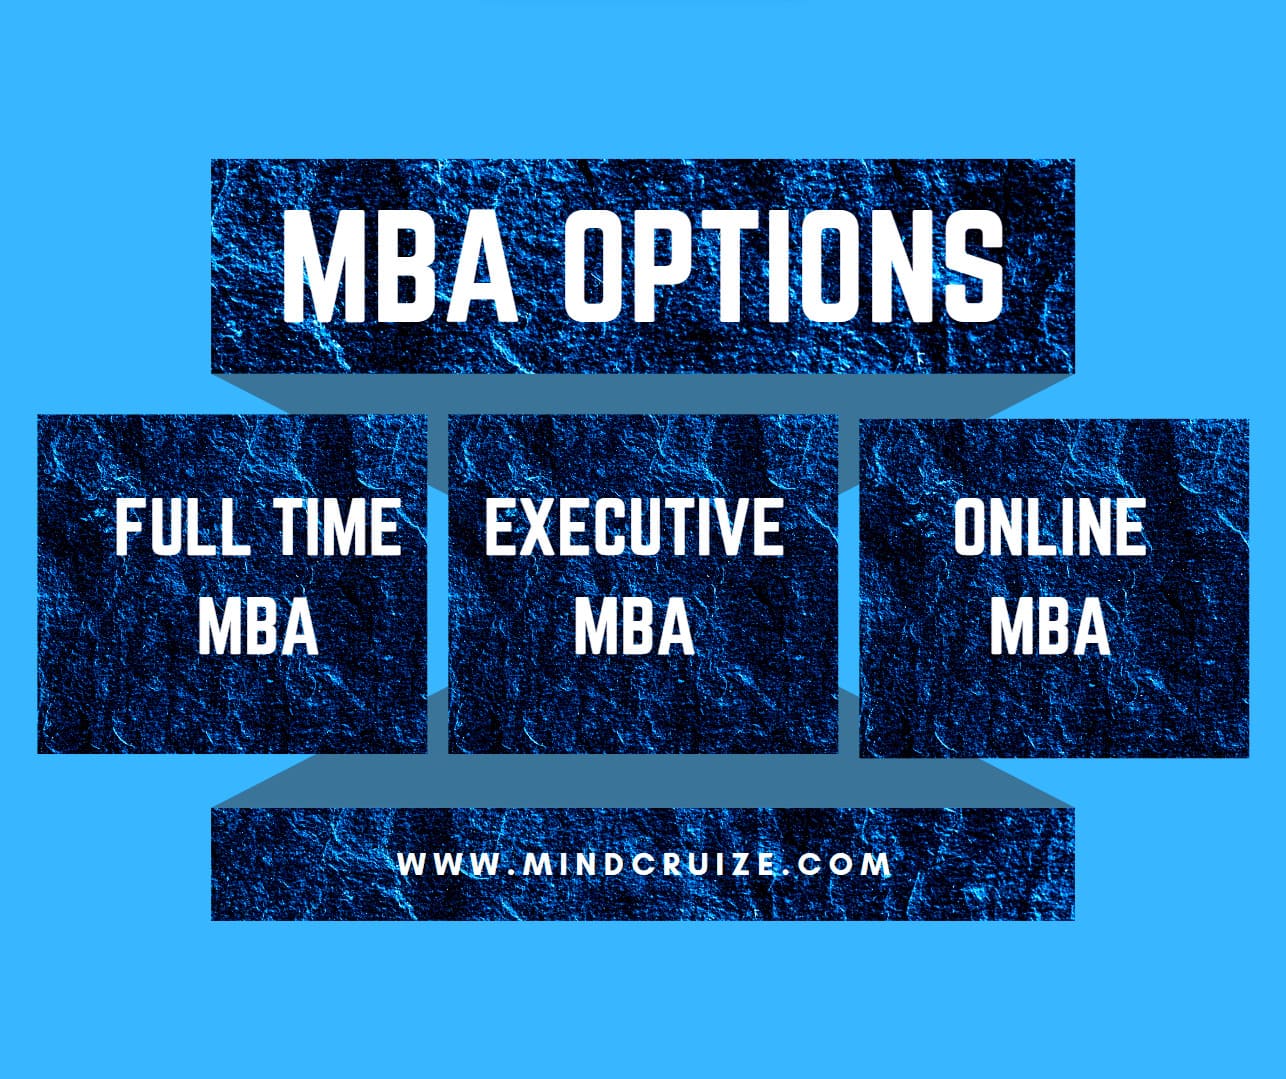 MBA options - full time vs online vs executive MBA